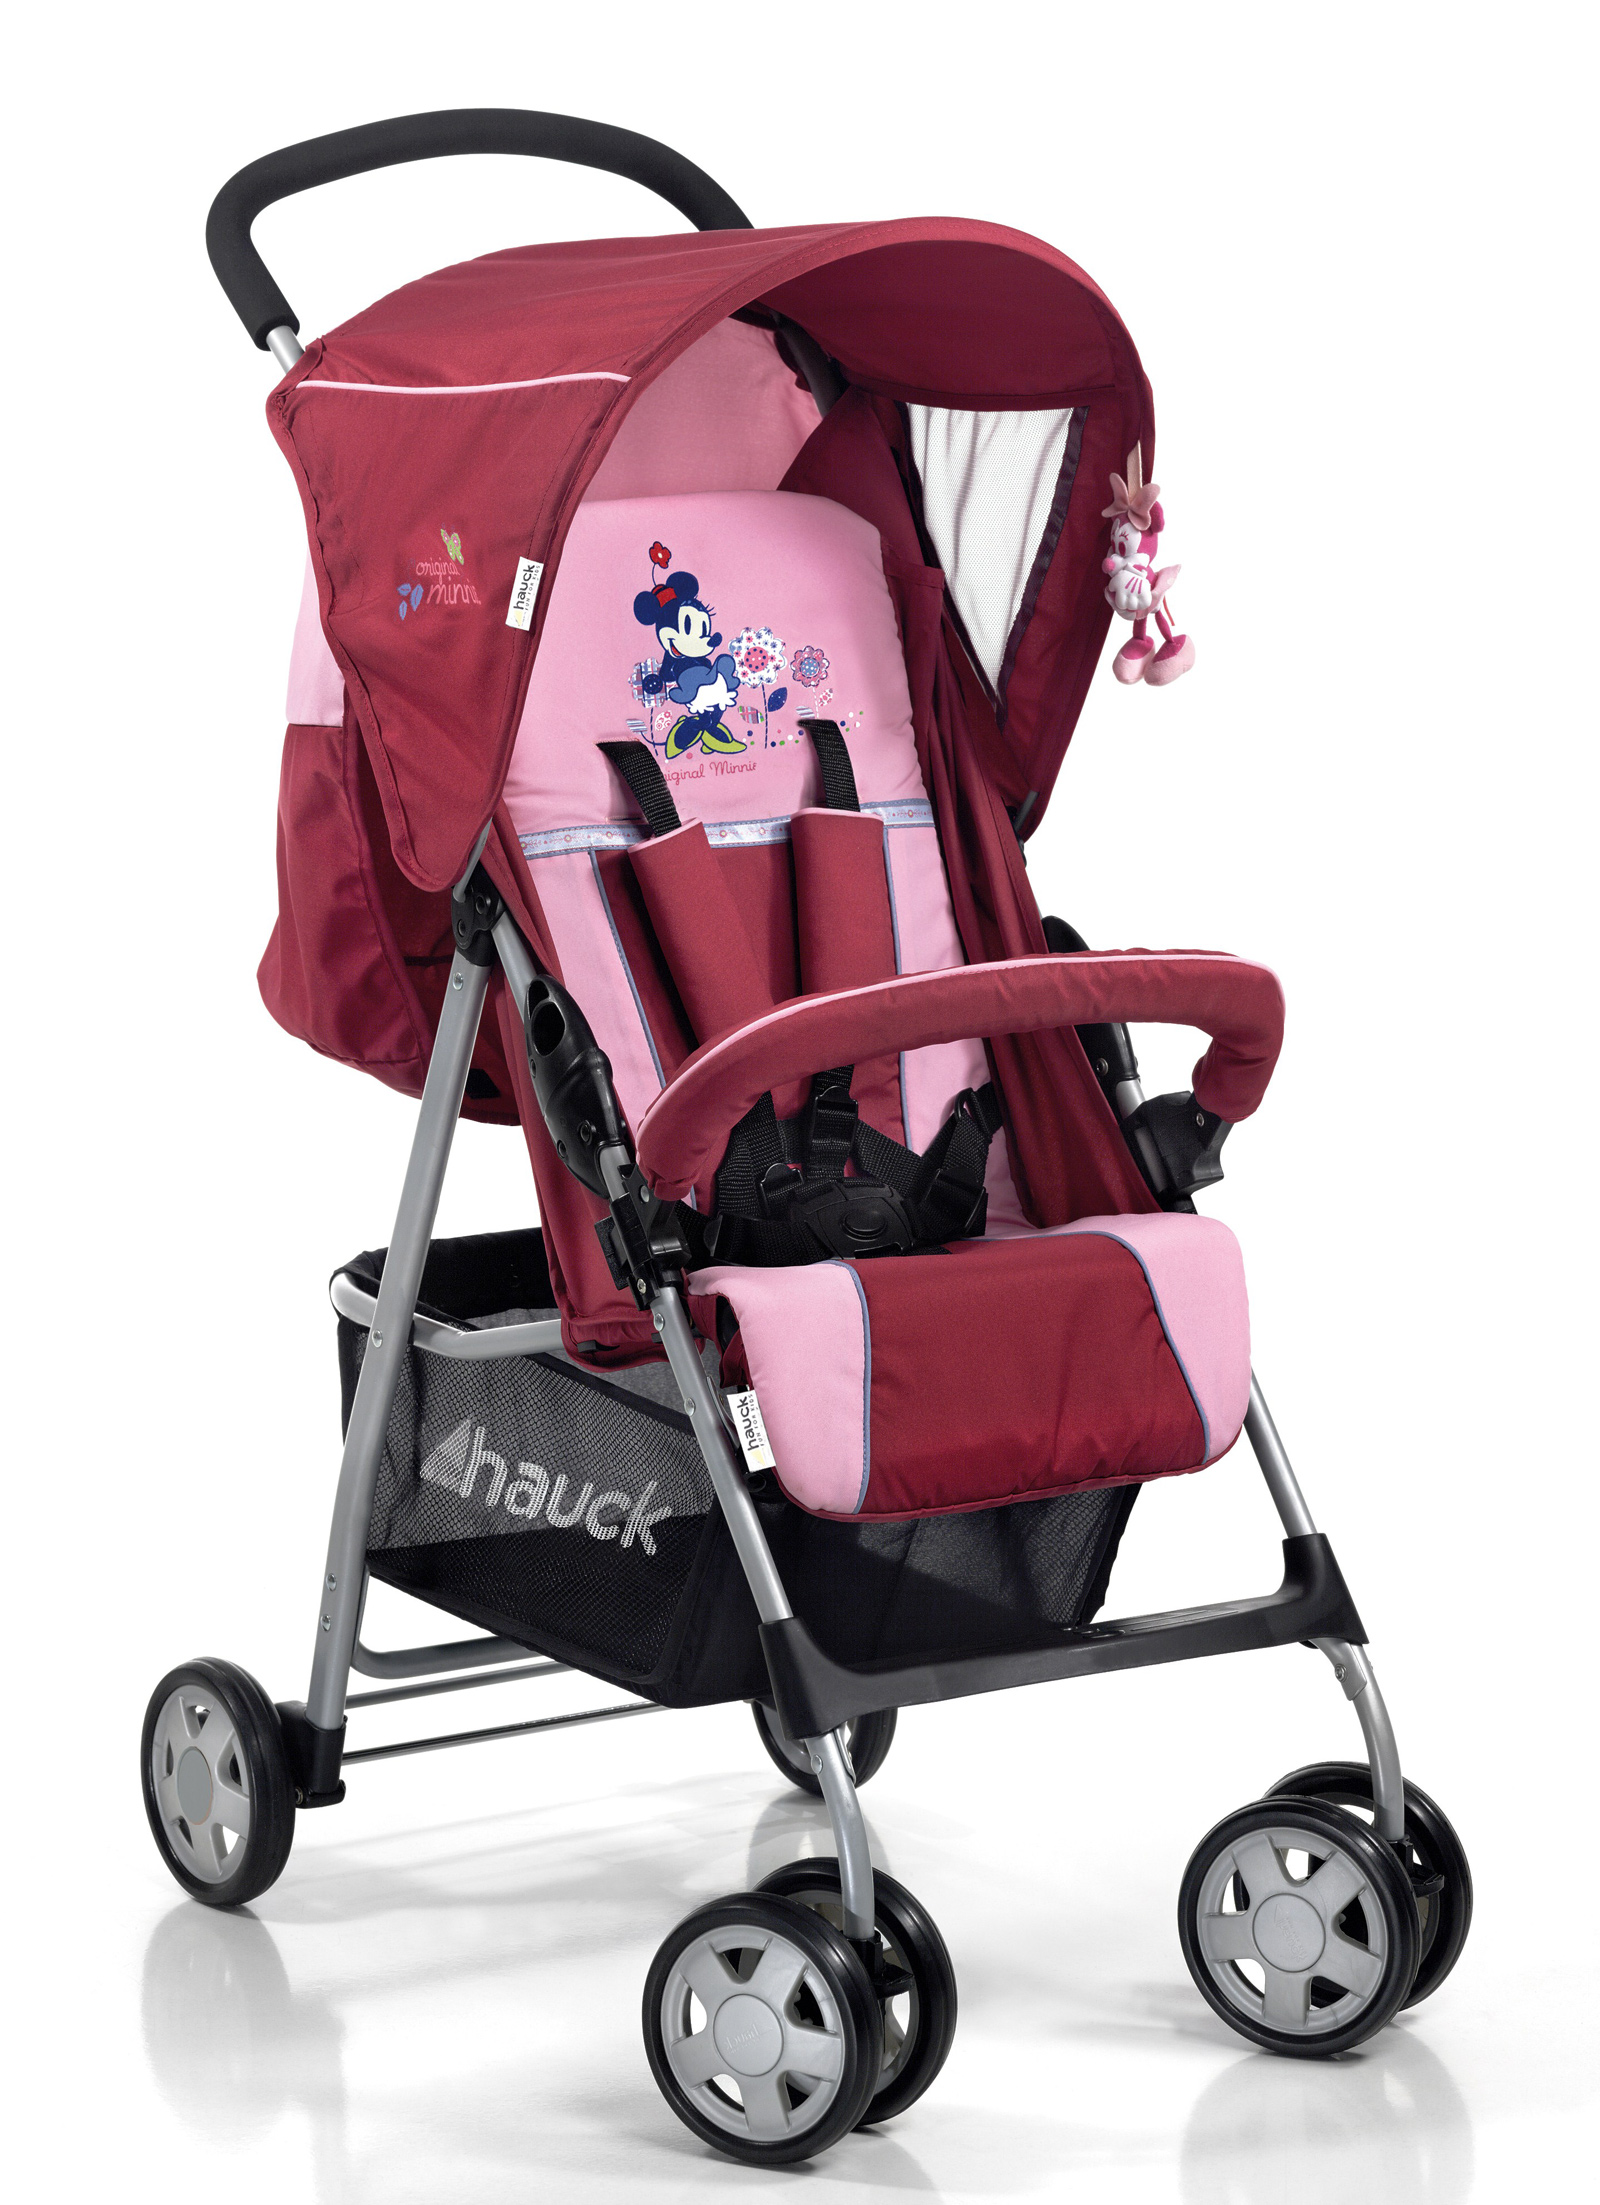 Hauck - Stroller Sport - Original Minnie Pink by Disney Baby